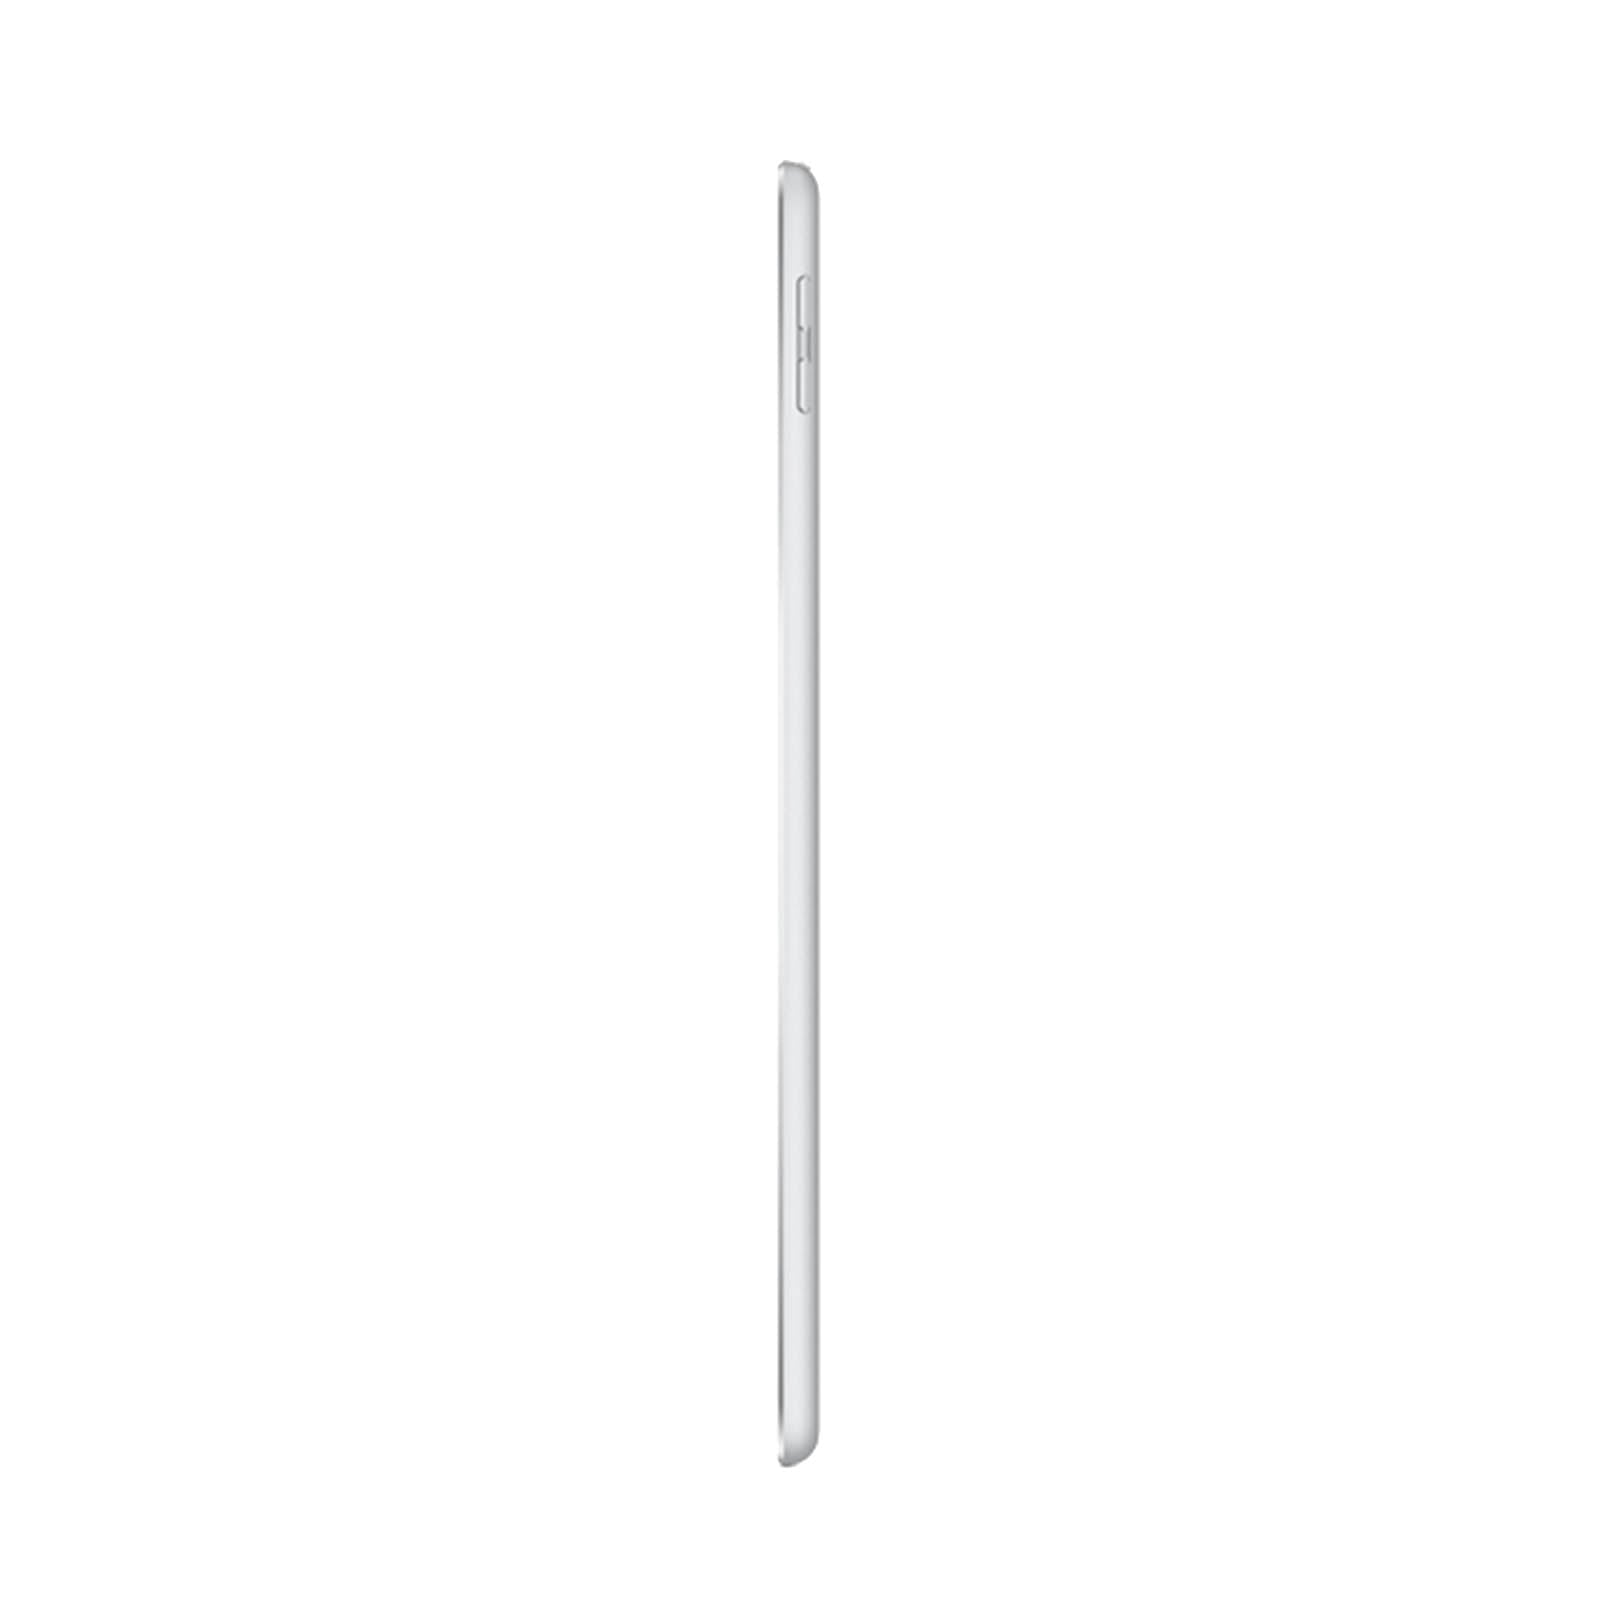 Apple iPad 5 128GB WiFi Silver - Good